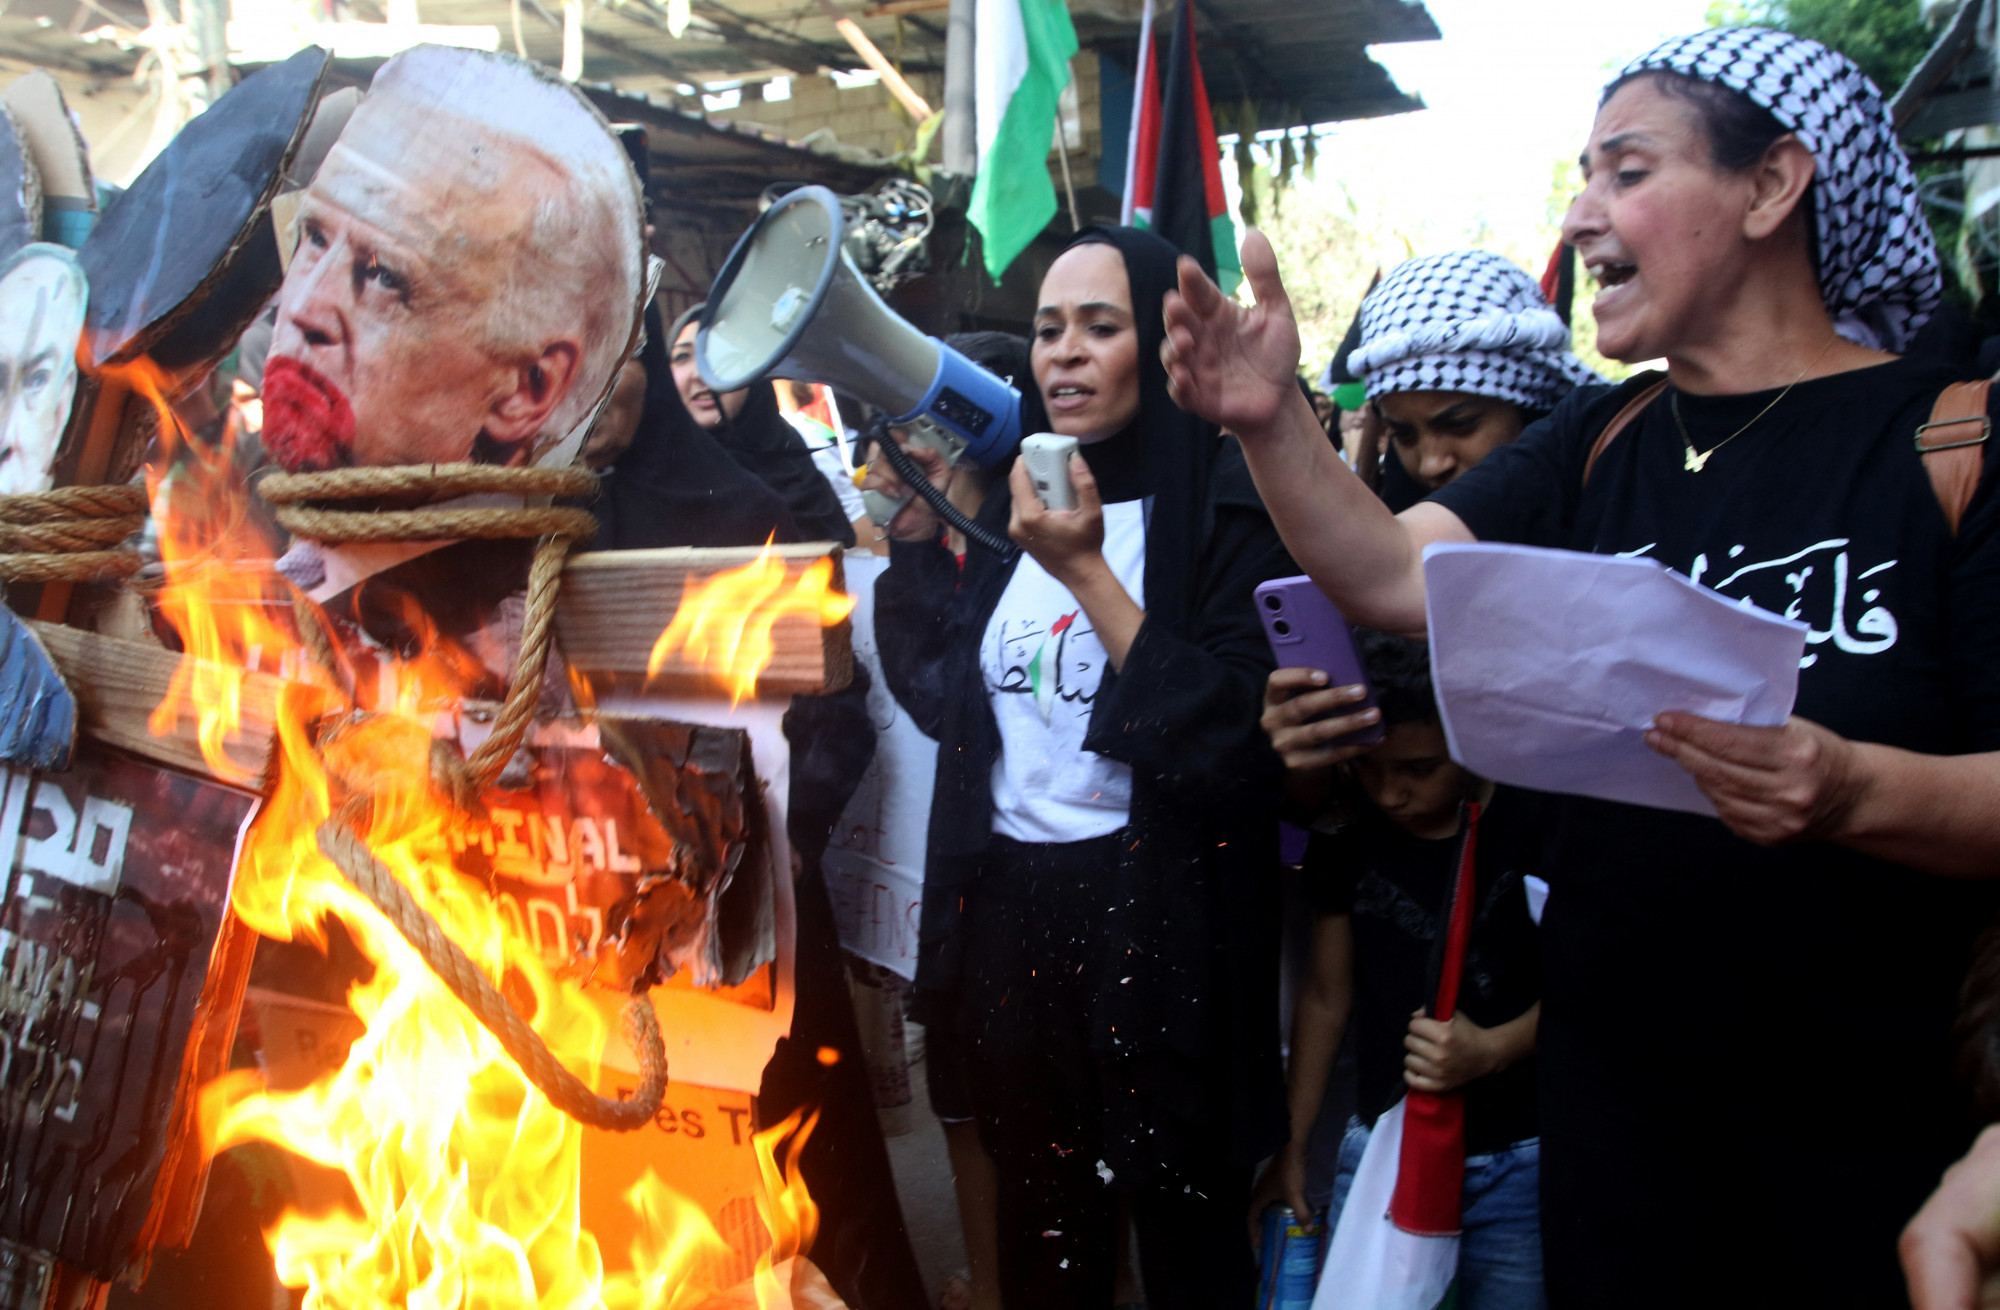 Egy nő beszél megafonba, miközben Joe Biden amerikai elnök képét égetik egy tüntetésen az Ain al-Hilweh palesztin menekülttáborban, a dél-libanoni Szidón kikötőváros közelében 2023. október 18-án, aznap, amikor az amerikai elnök a szomszédos Izraelbe látogatott, és egy nappal a gázai Al-Ahli al-Arabi kórház elleni, több száz halálos áldozatot követelő támadás után.